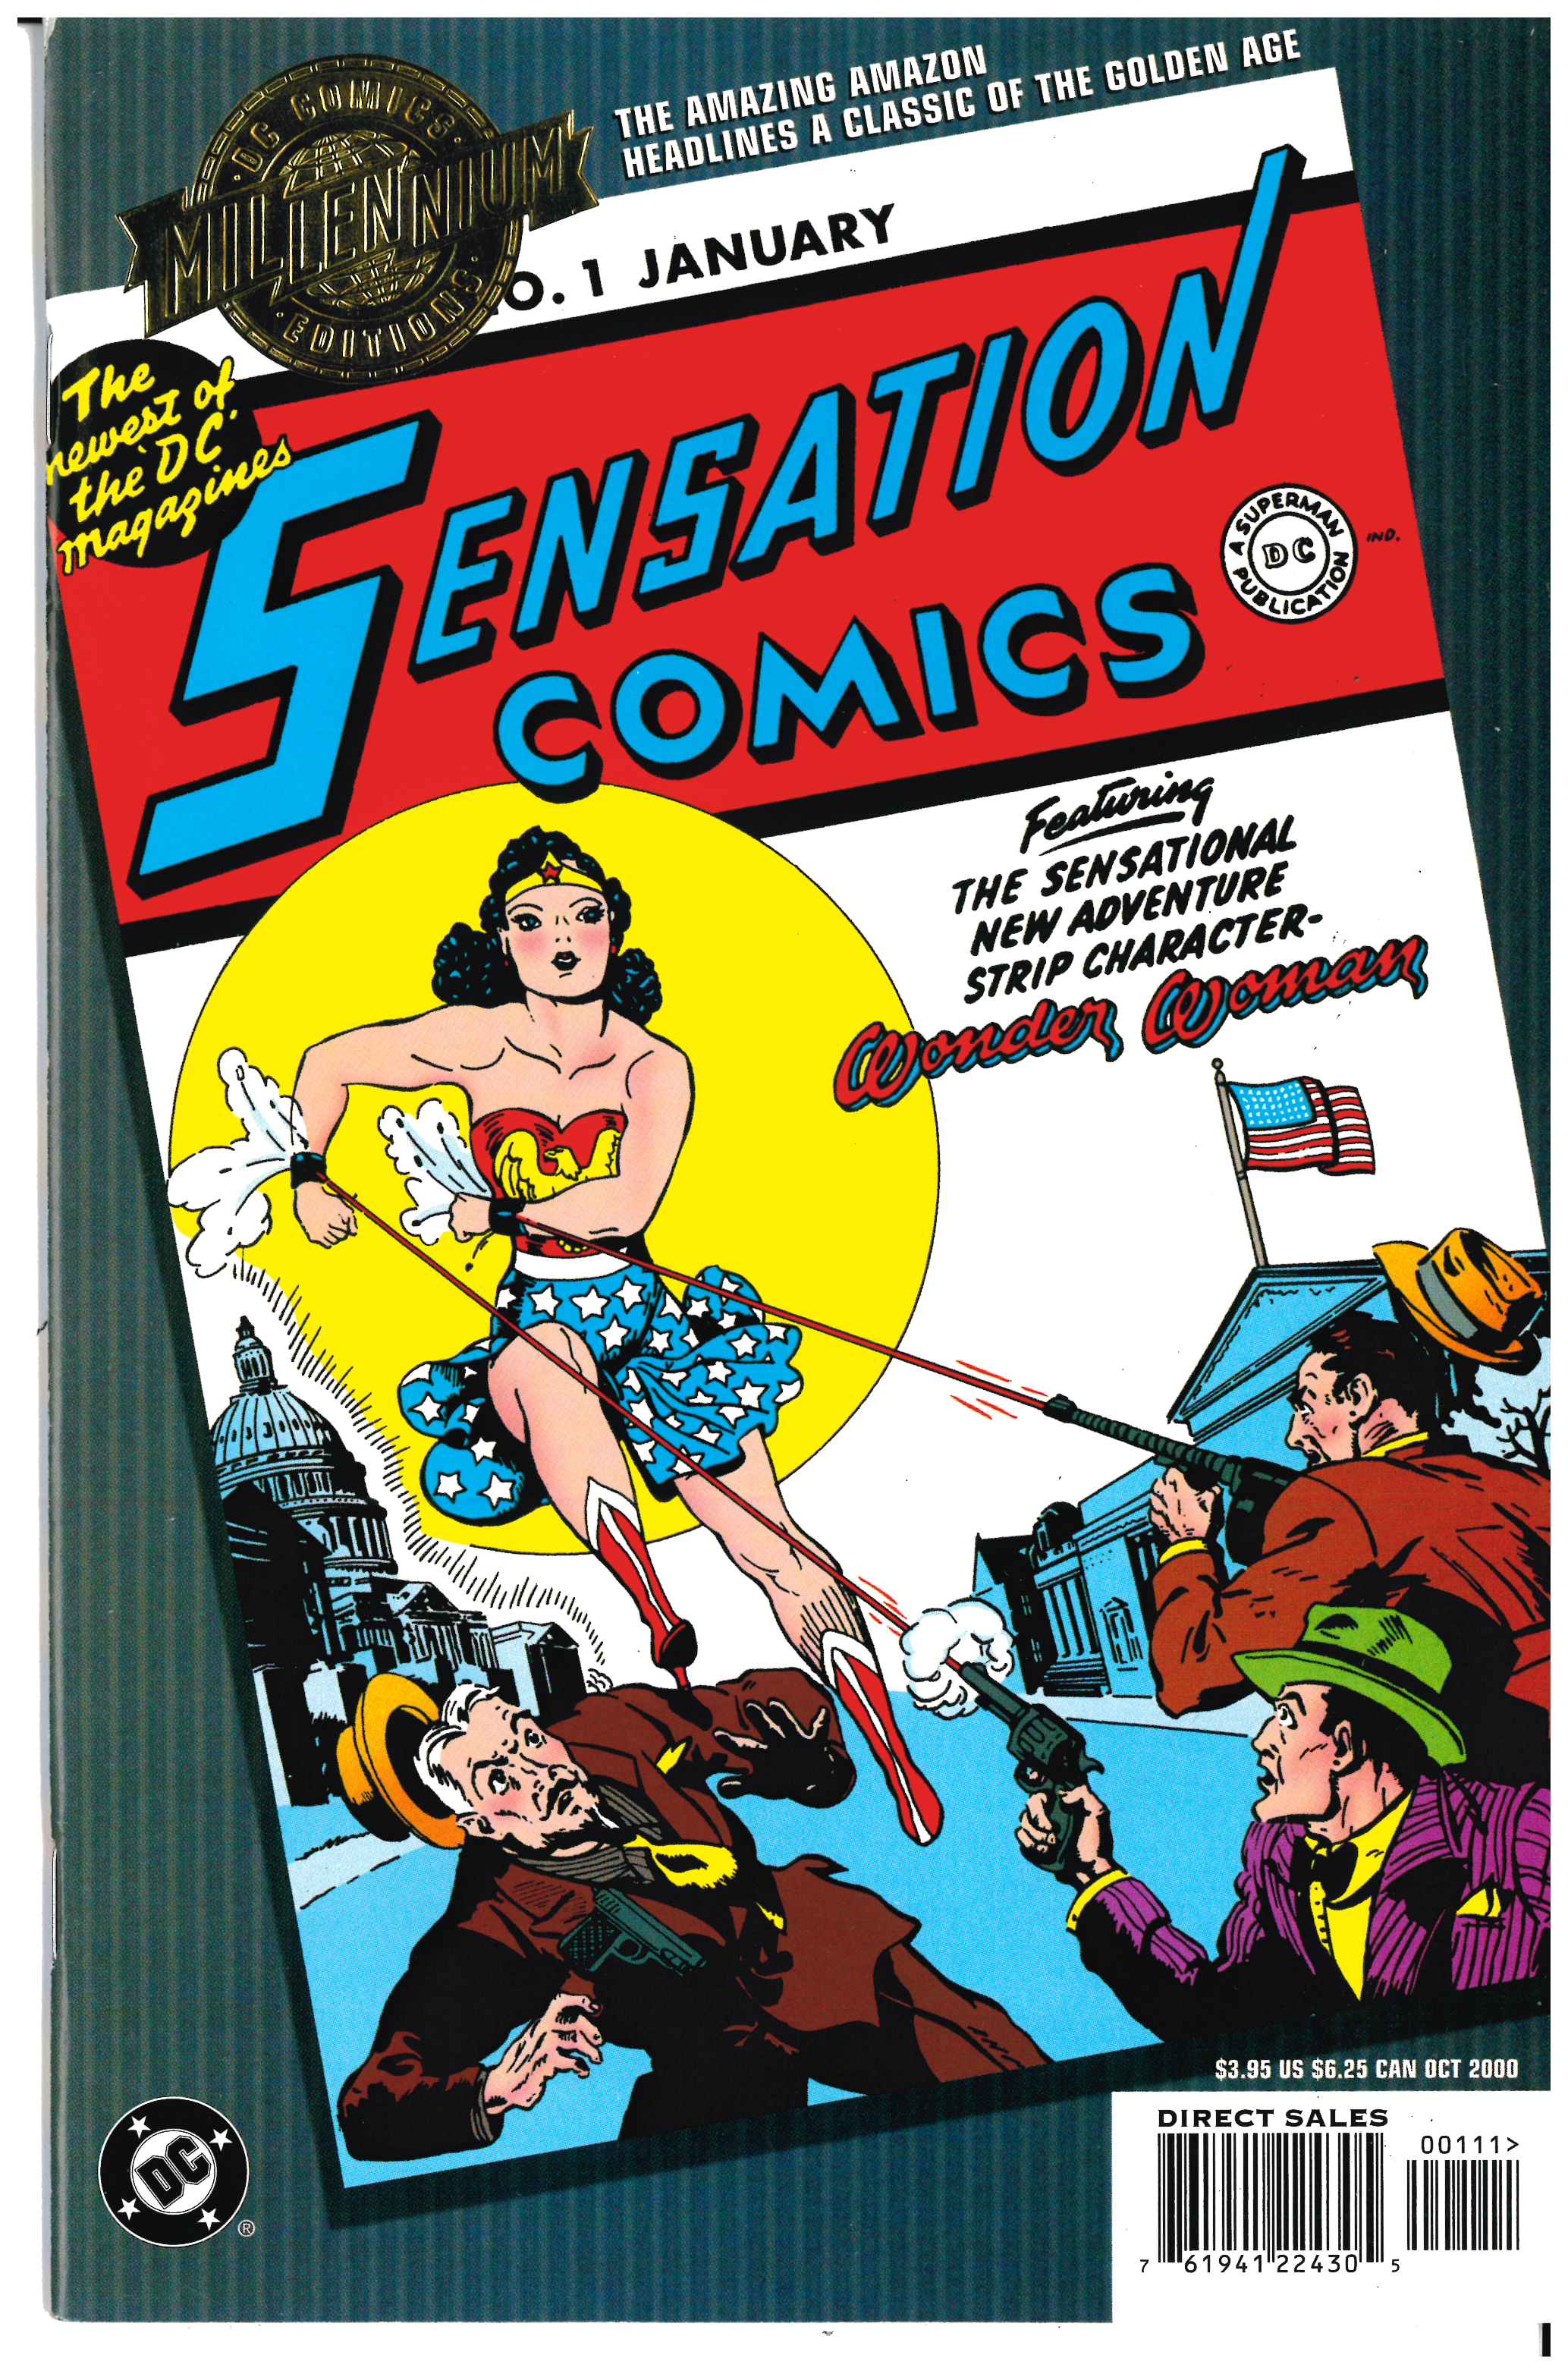 Sensational Comics #1